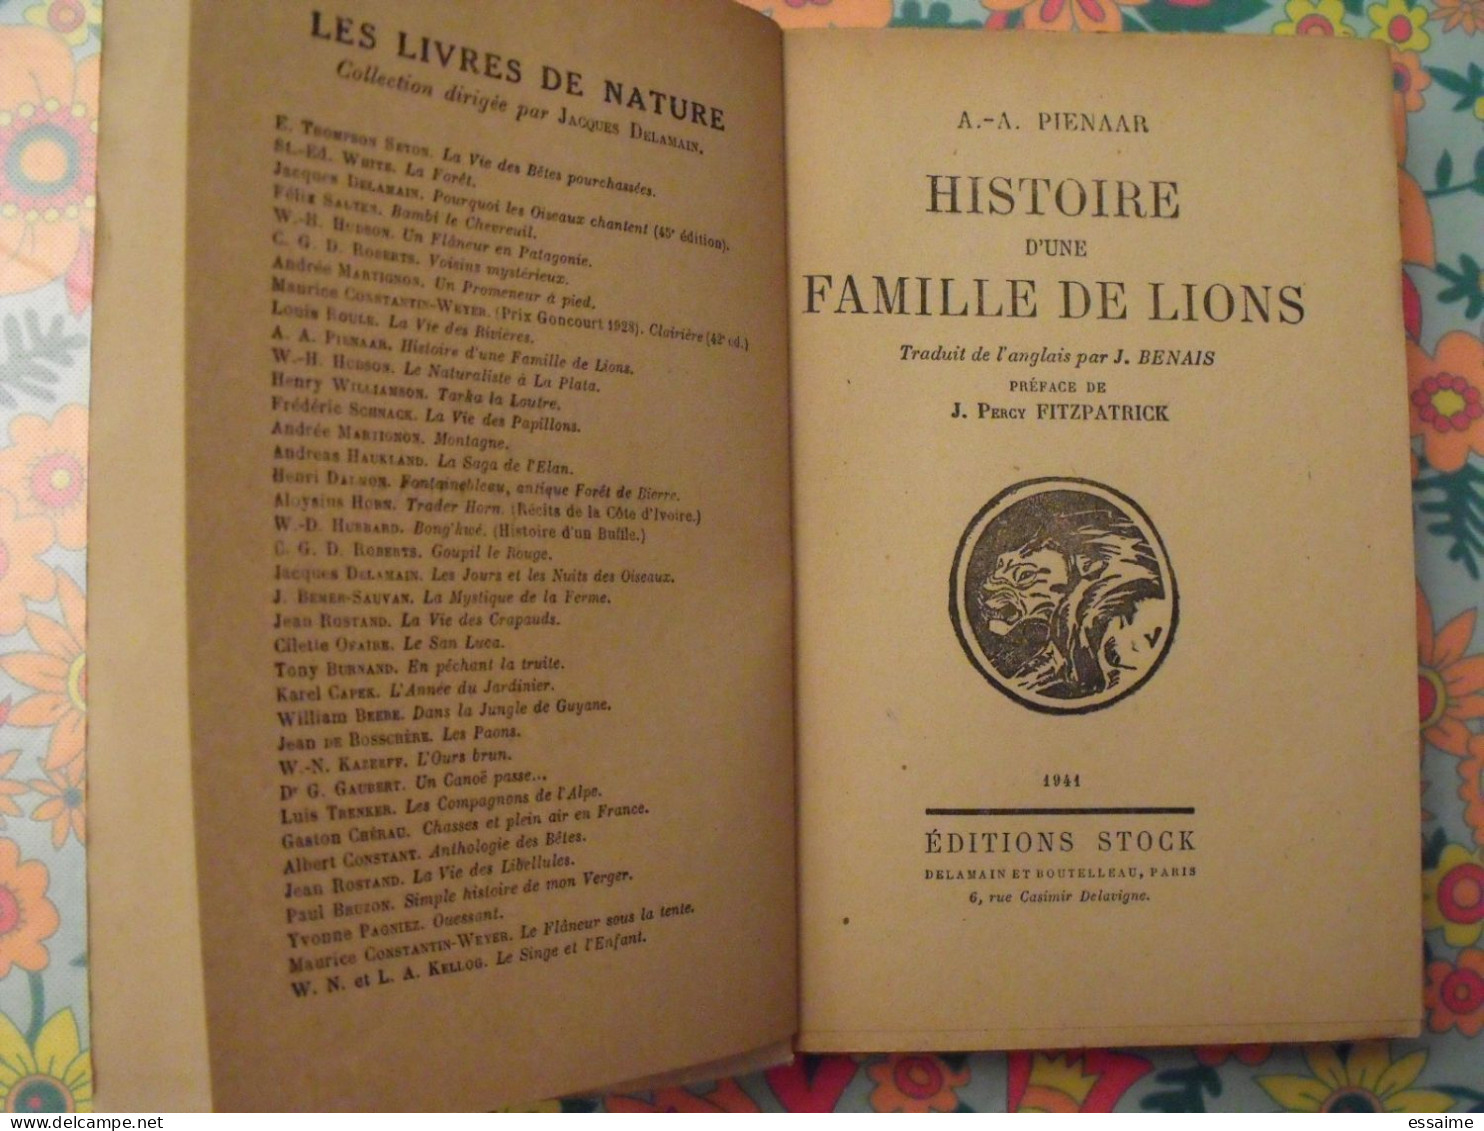 Histoire D'une Famille De Lions. Pienaar. Stock 1941. Delamain. Fitzpatrick - Avontuur